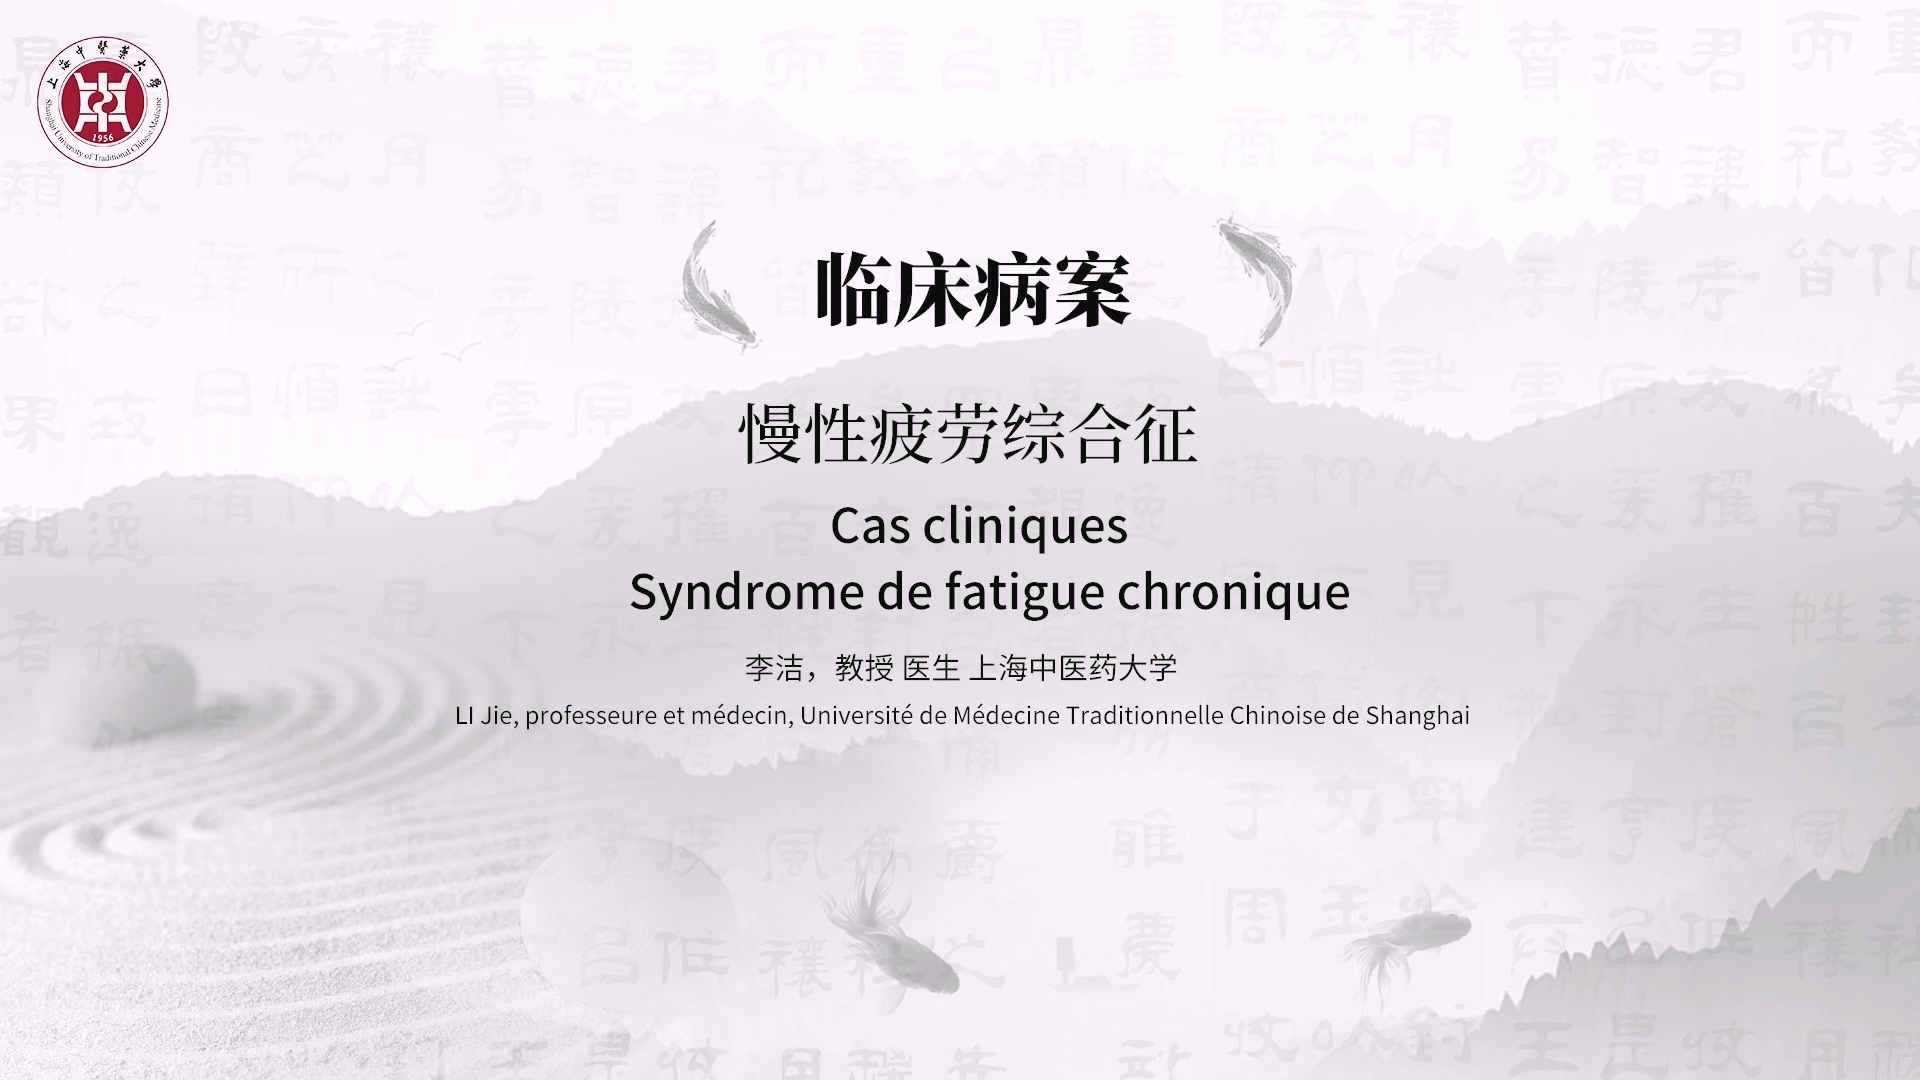 2.2 Syndrome de fatigue chronique